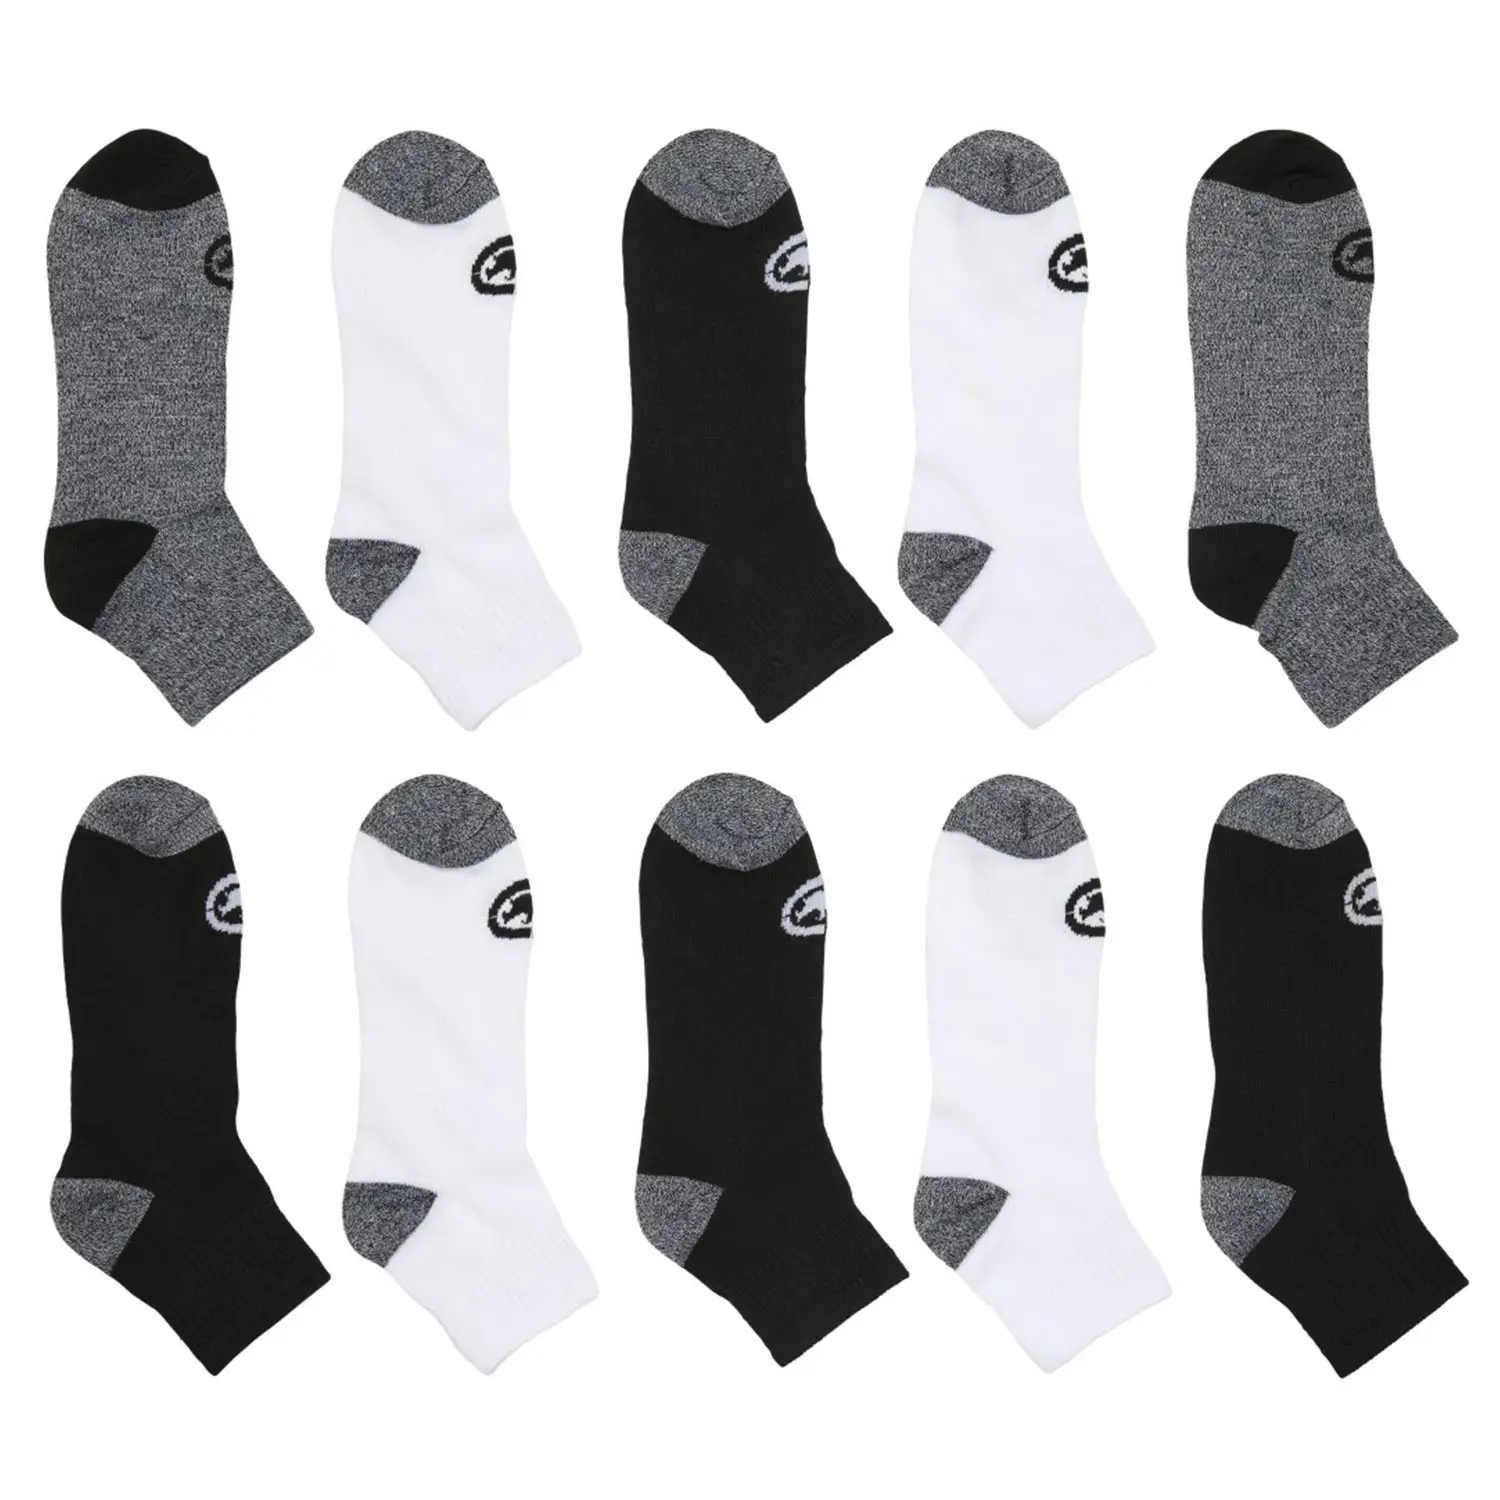 Ecko Unltd. Men's Socks 10 Pack Flat knit Quarter Length